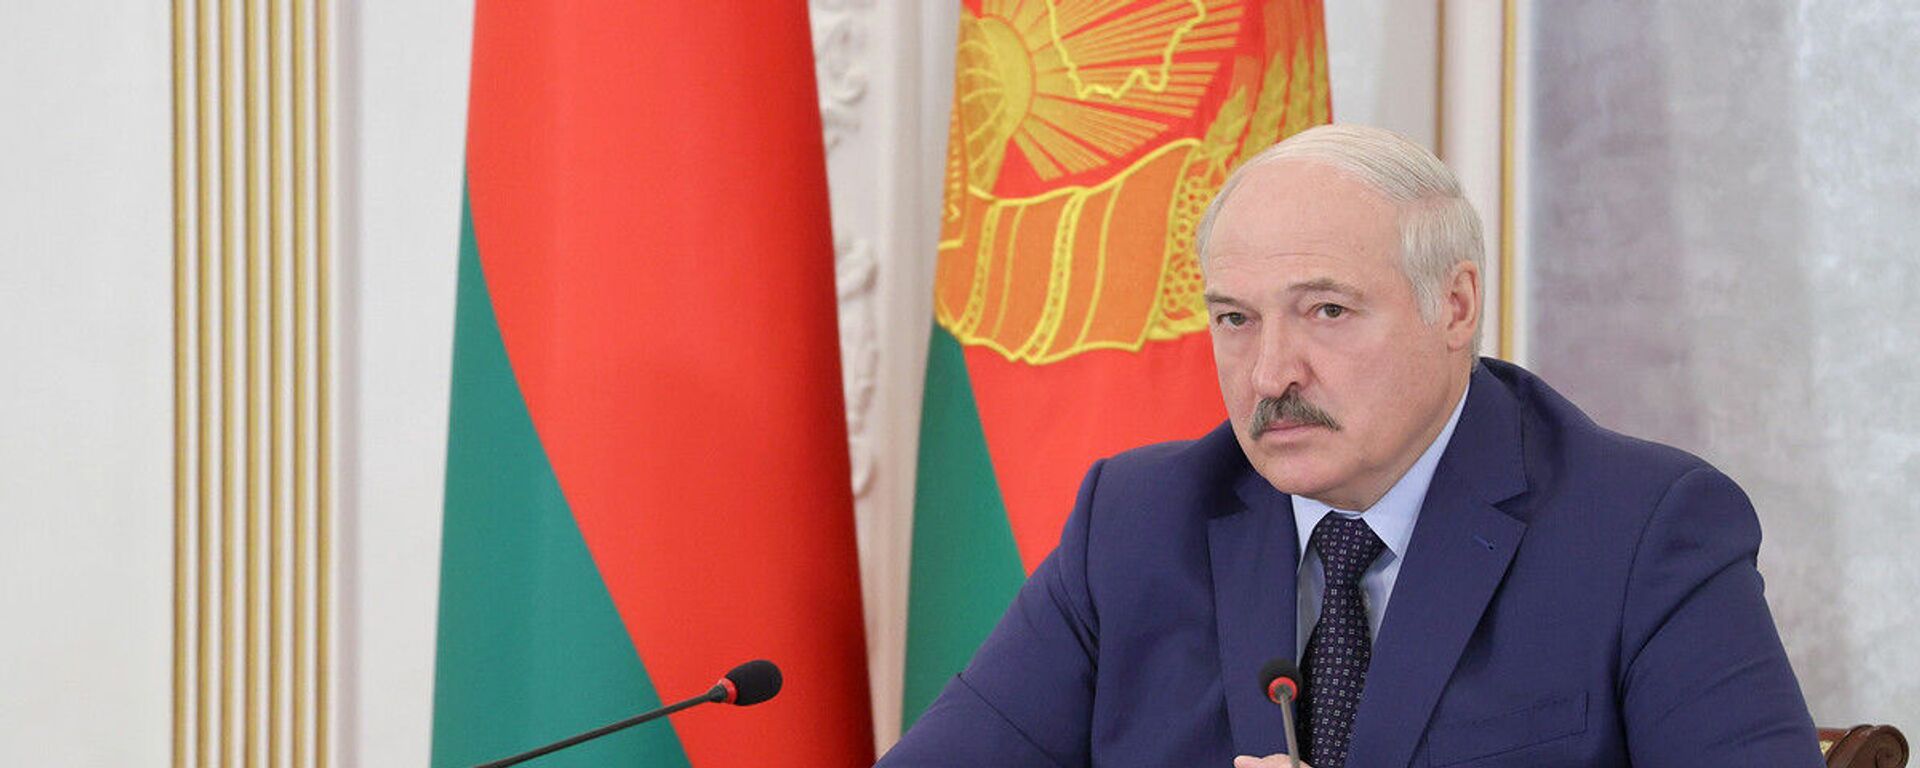 Александр Лукашенко во время заседания Высшего Евразийского экономического совета - Sputnik Беларусь, 1920, 24.05.2021